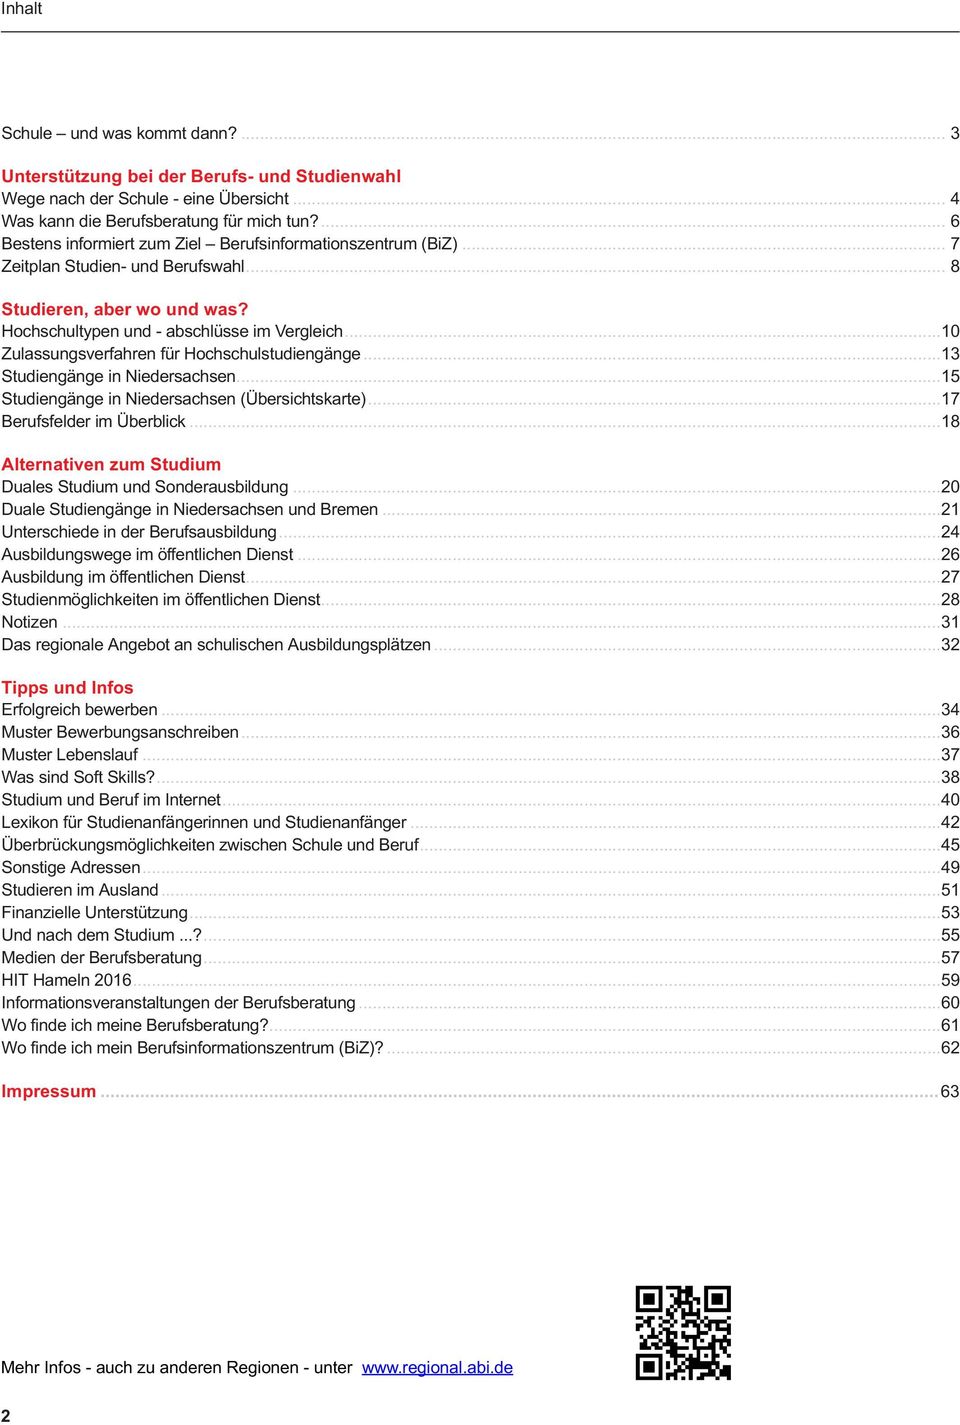 .. 10 Zulassungsverfahren für Hochschulstudiengänge... 13 Studiengänge in Niedersachsen... 15 Studiengänge in Niedersachsen (Übersichtskarte)... 17 Berufsfelder im Überblick.